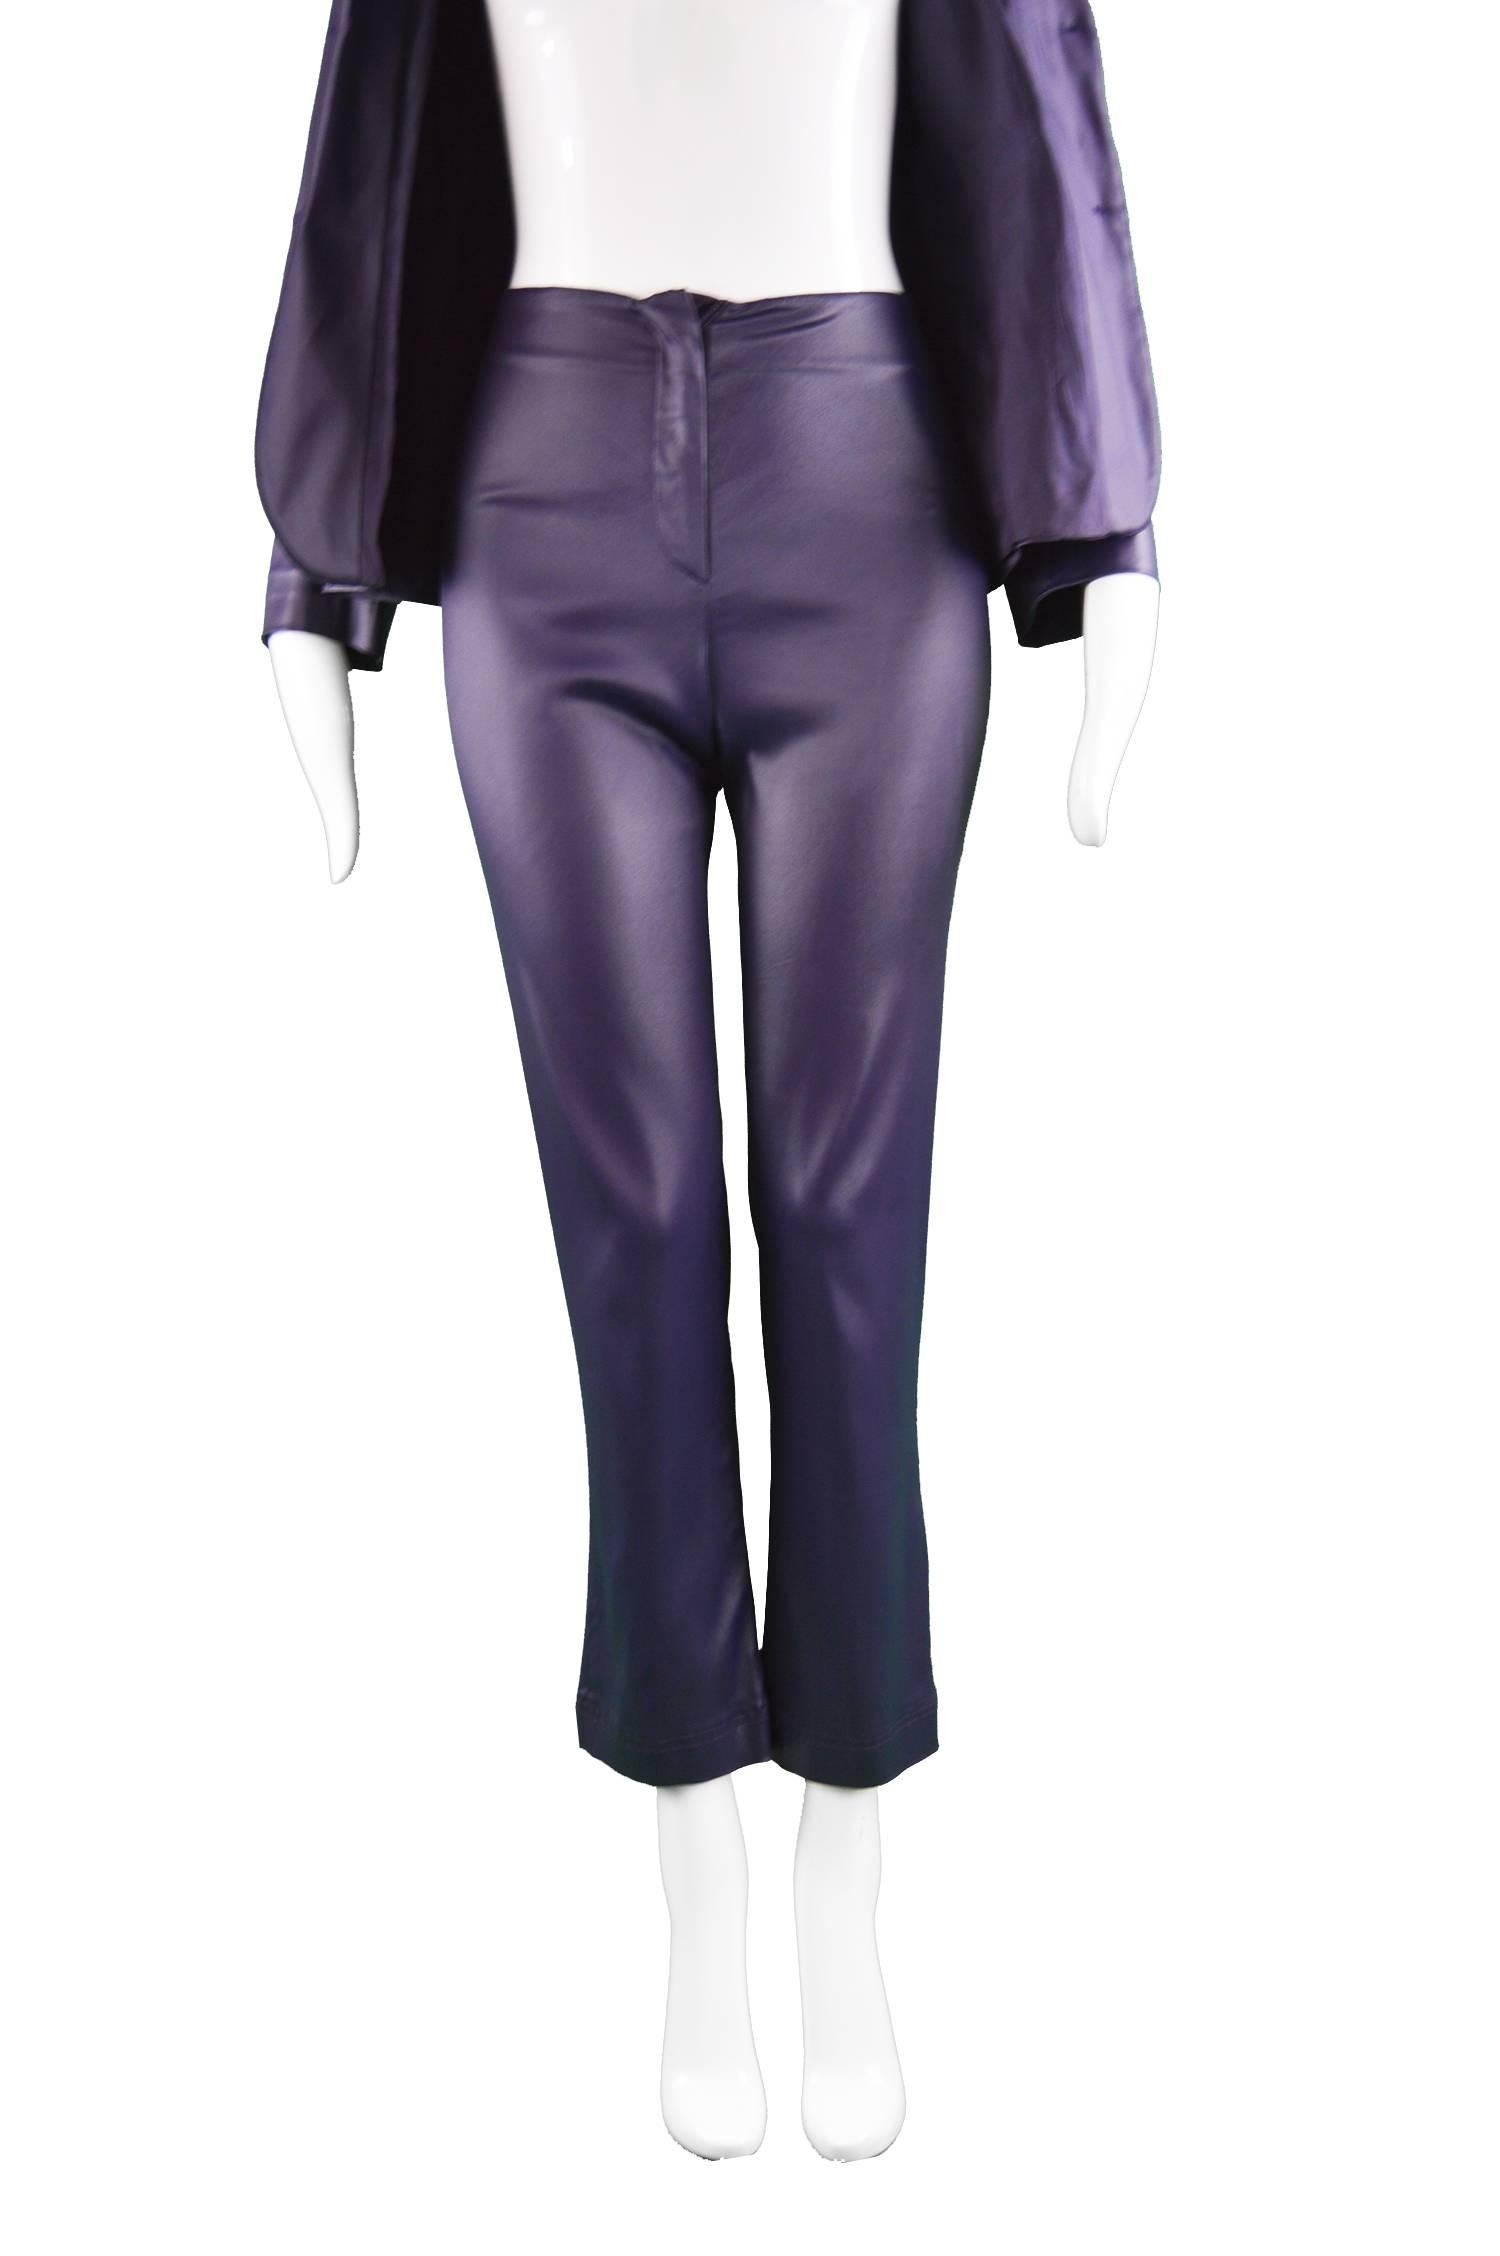 Women's Rifat Ozbek Dark Purple Wet Look Vintage Pant Suit, 1990s For Sale